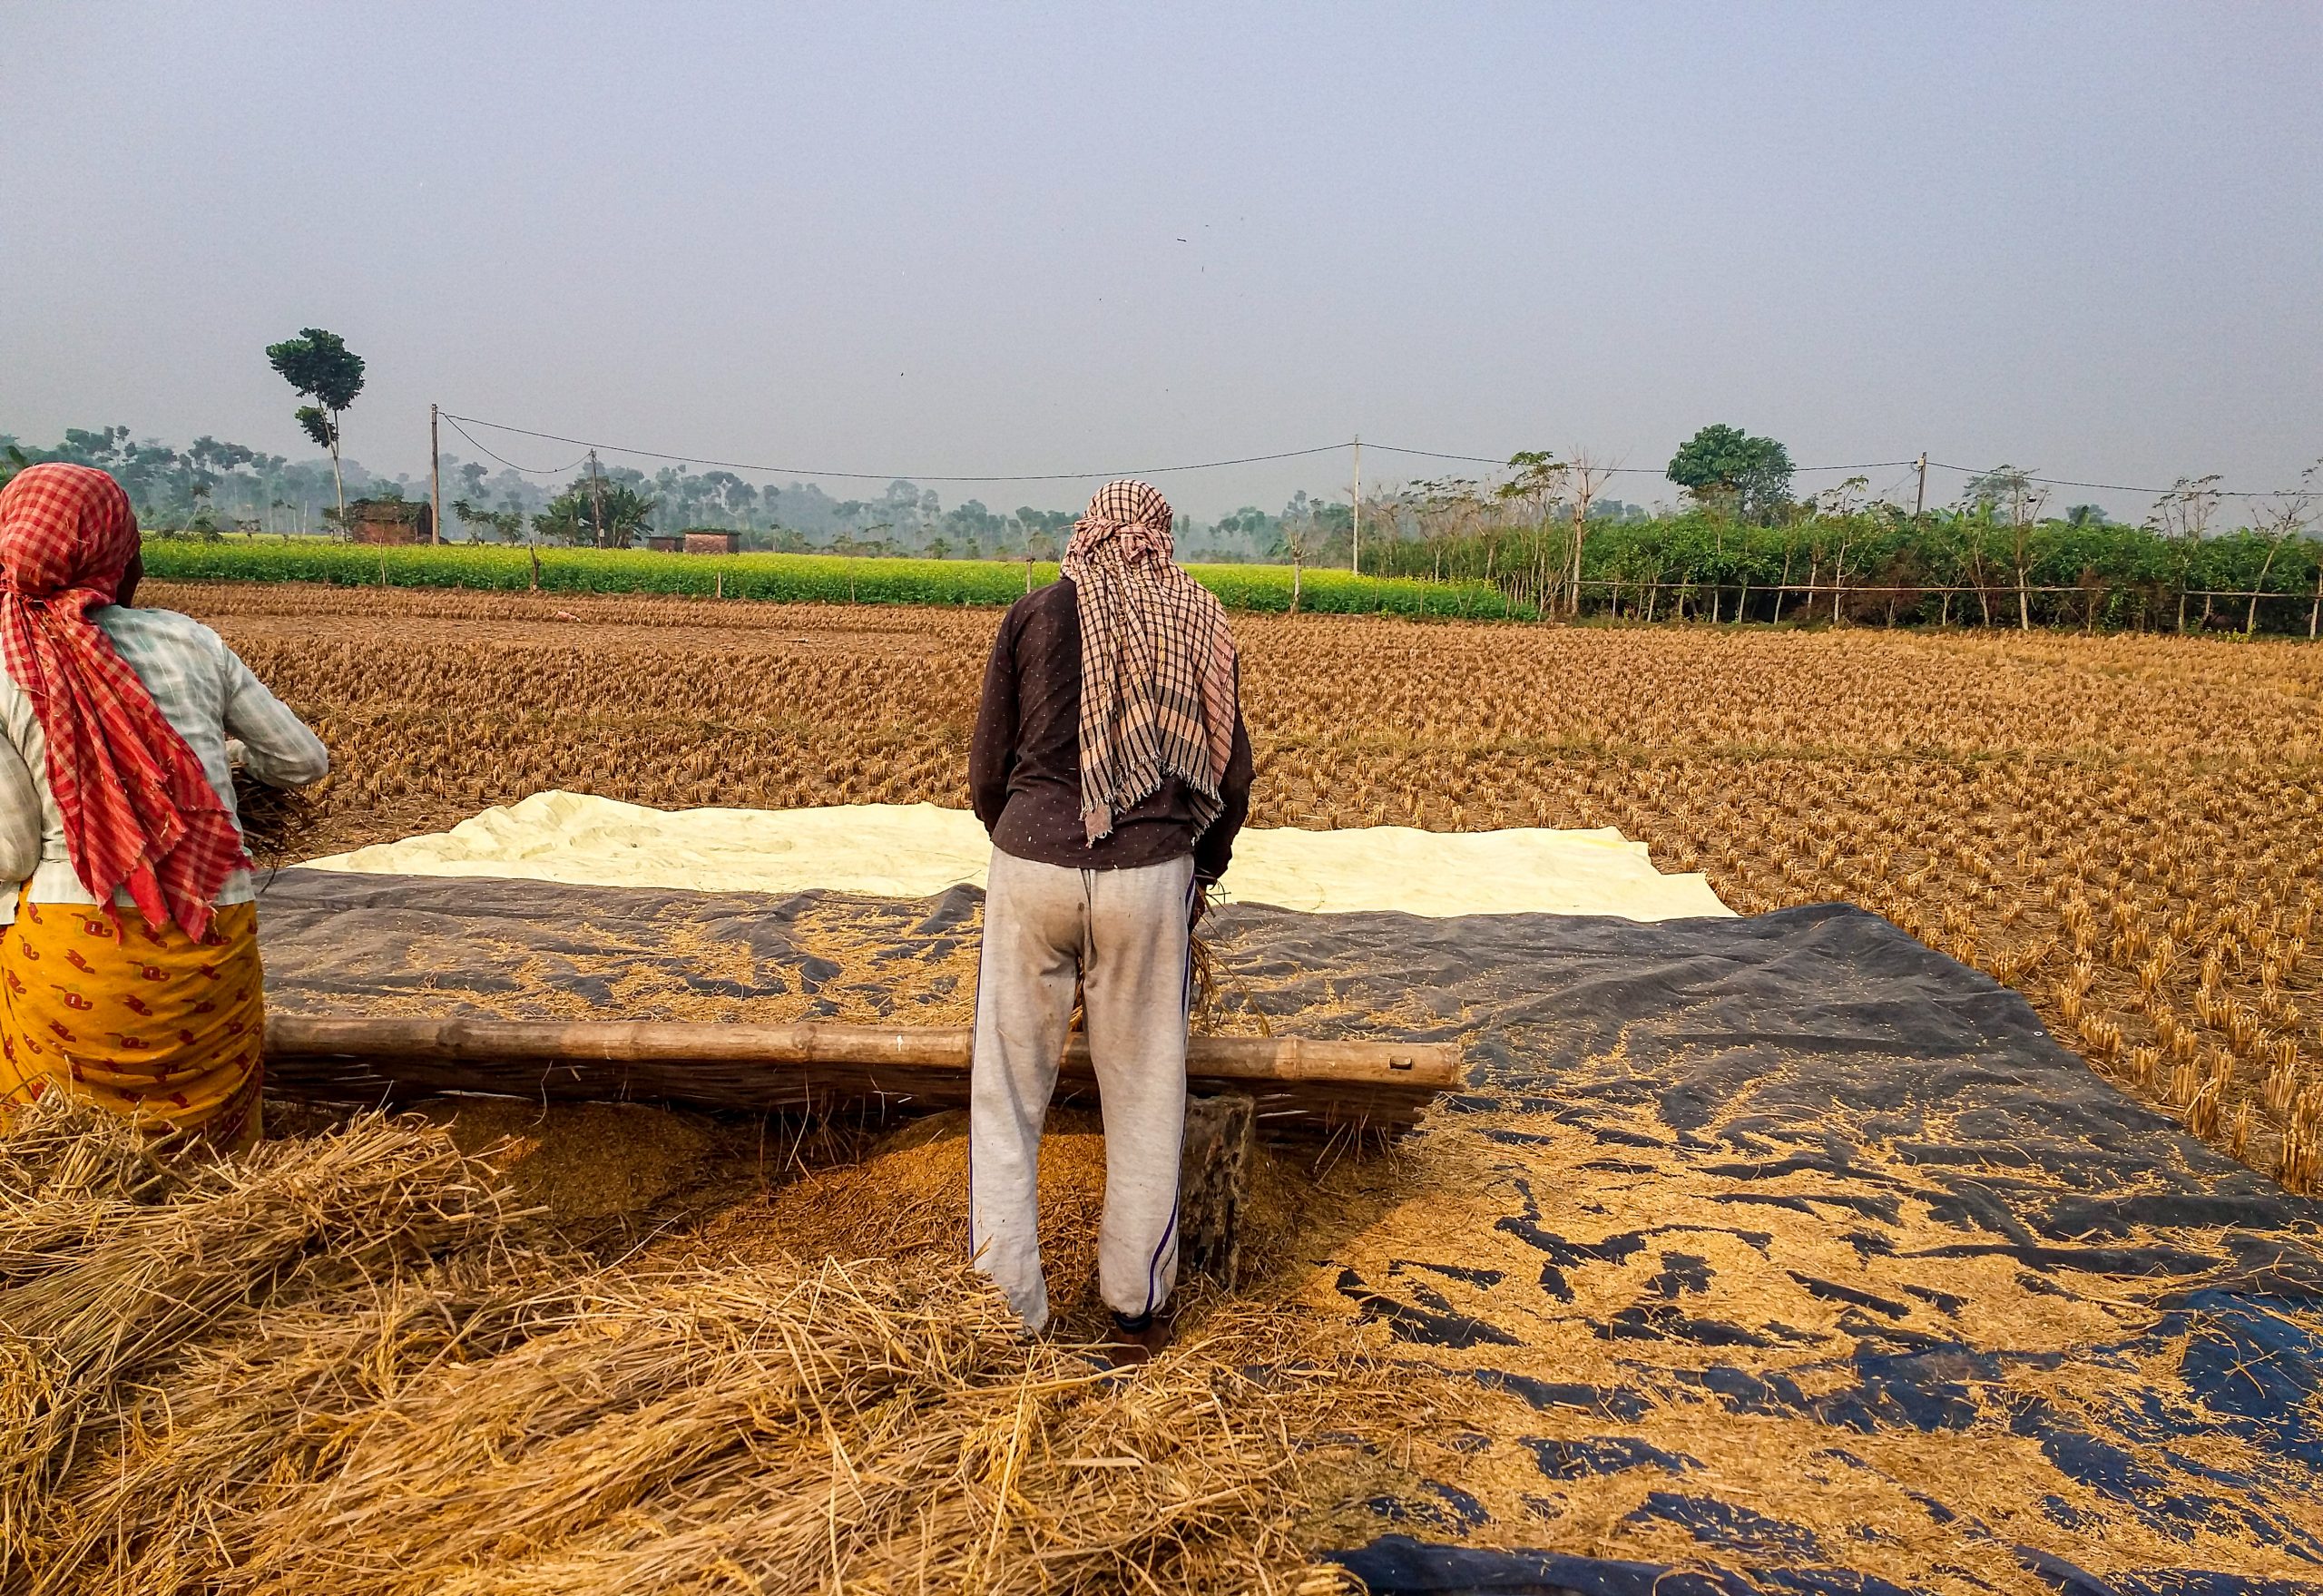 Farmers working in fields